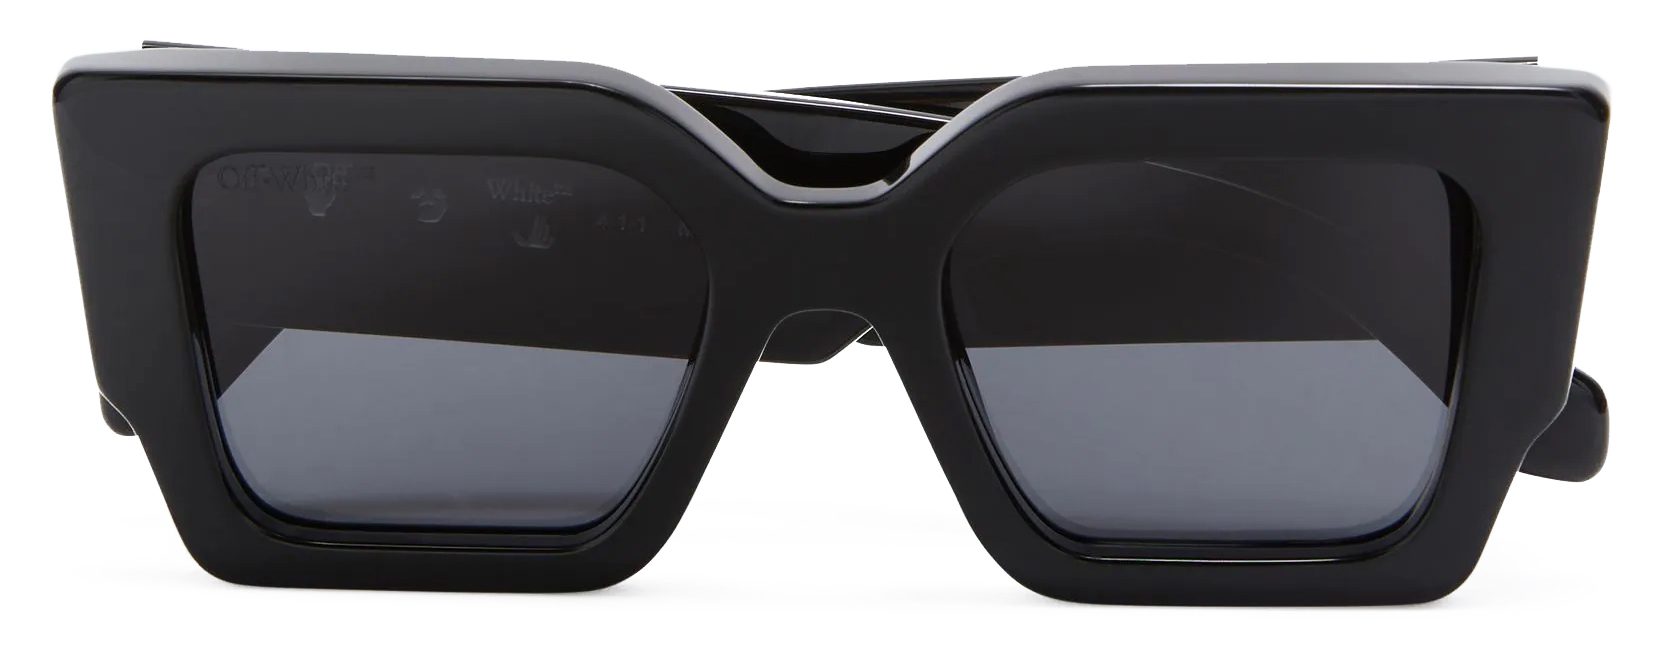 Off-White c/o Virgil Abloh Catalina Sunglasses in Black for Men